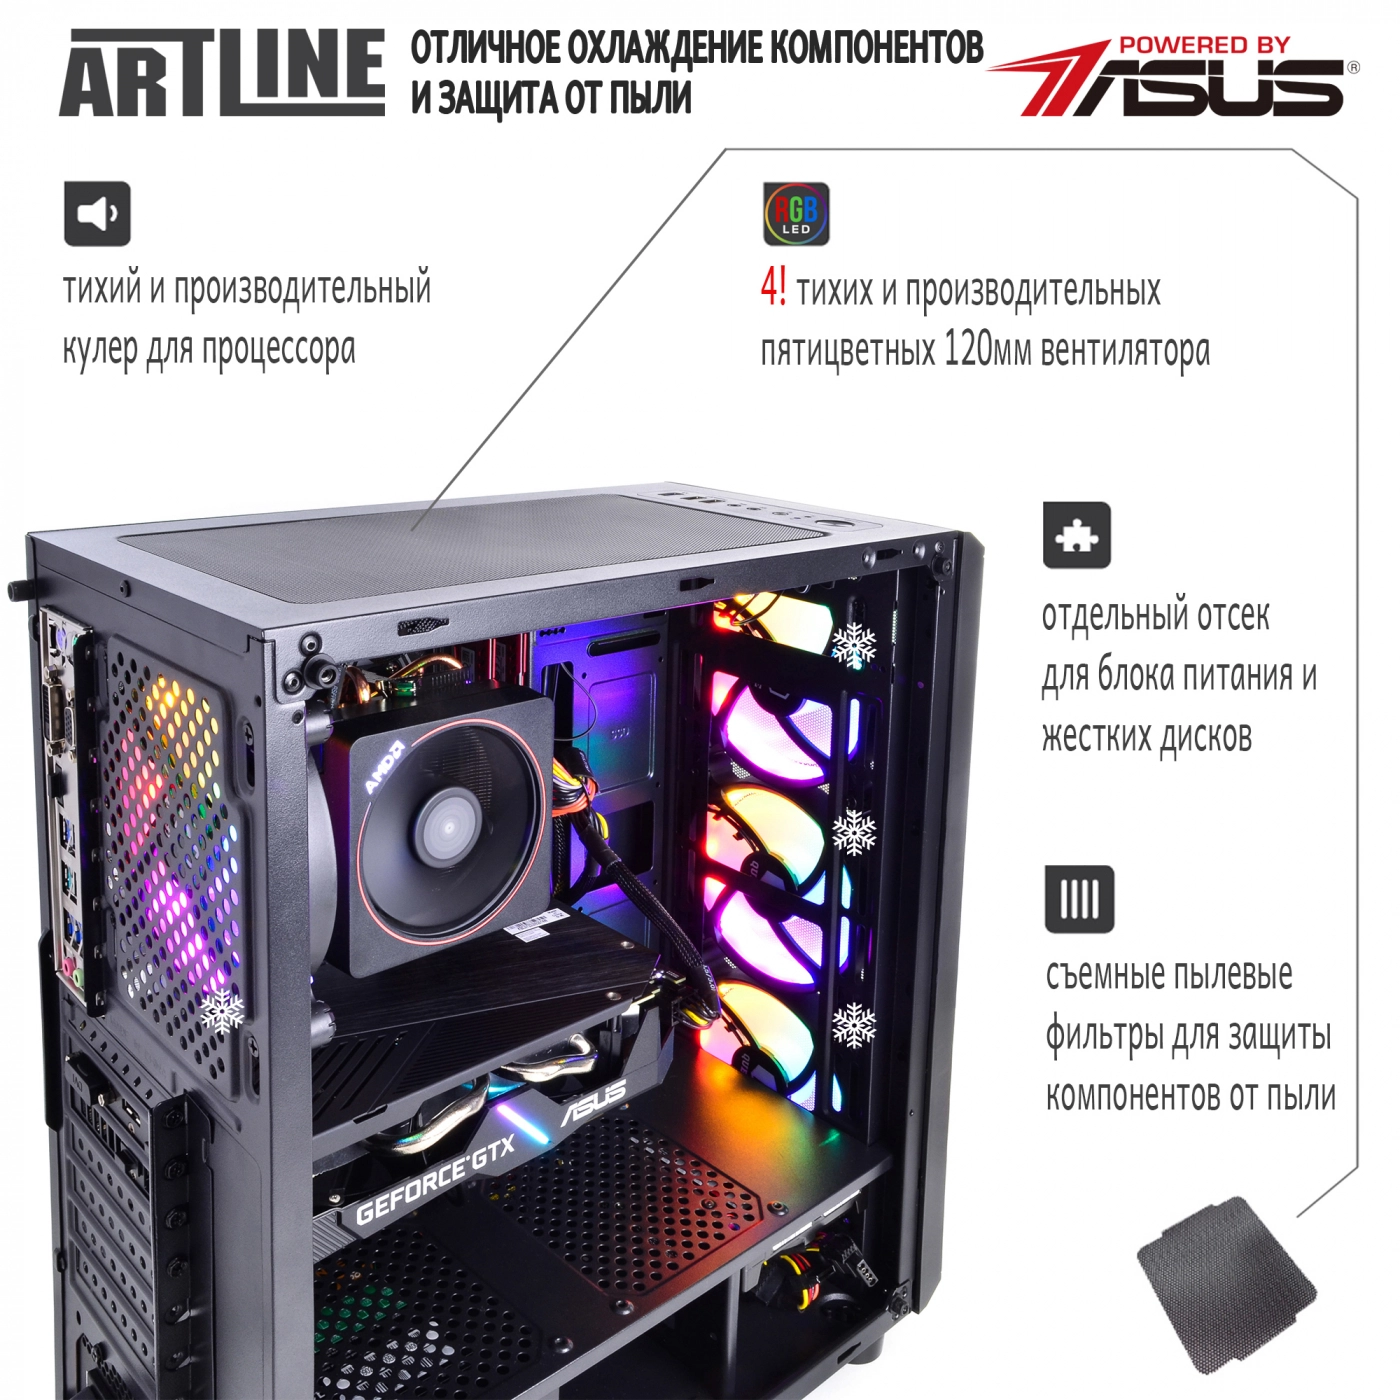 Купить Компьютер ARTLINE Gaming X48v05 - фото 3